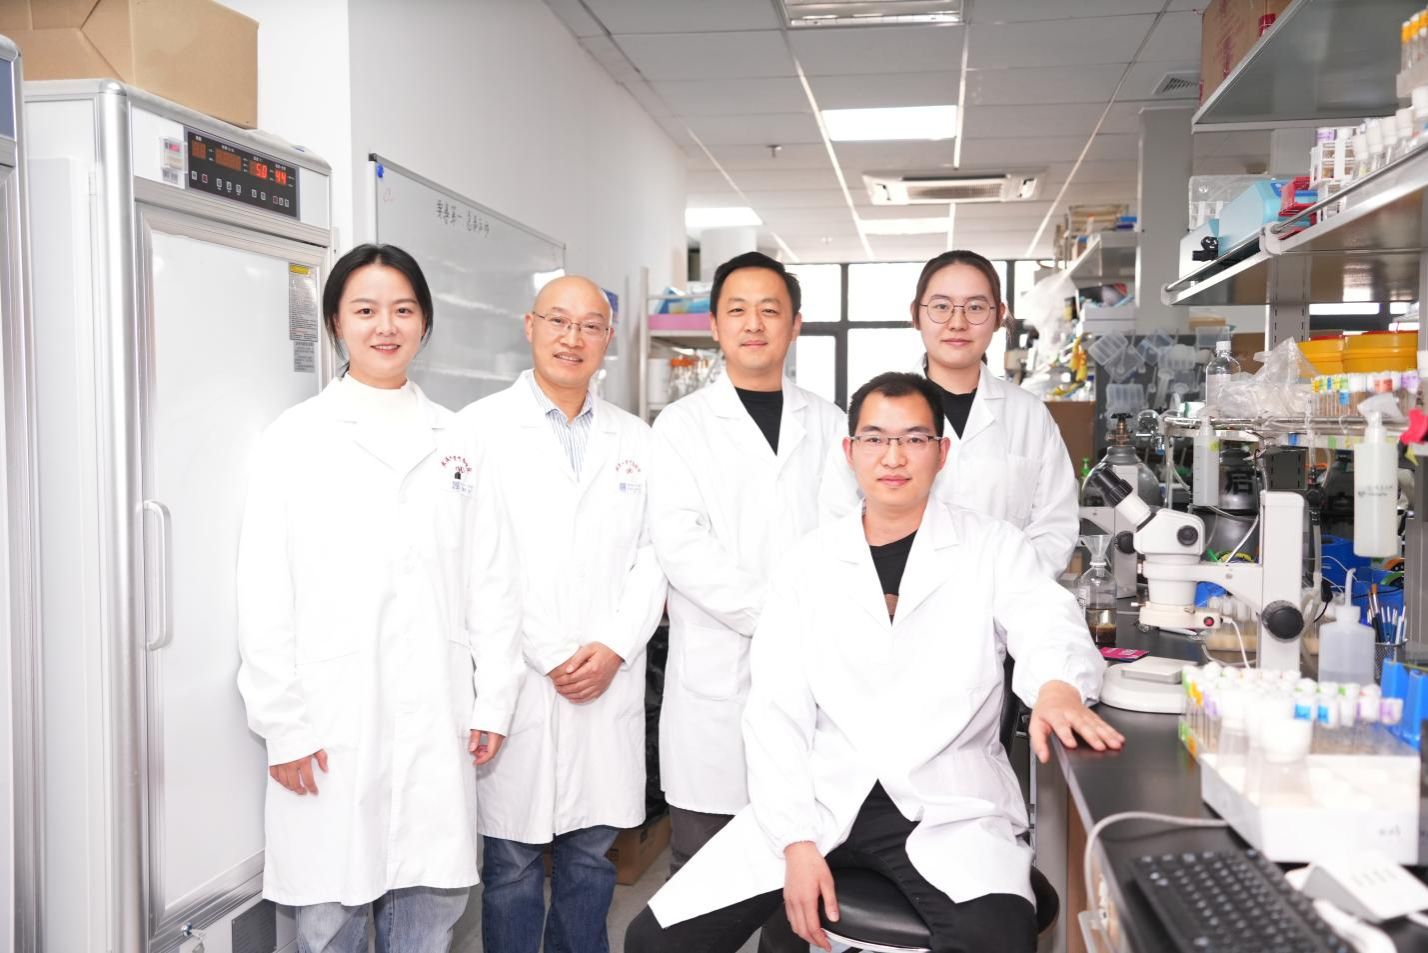 武汉大学宋威和叶旭军团队Nature发文揭示肿瘤与肾脏互作的新机制